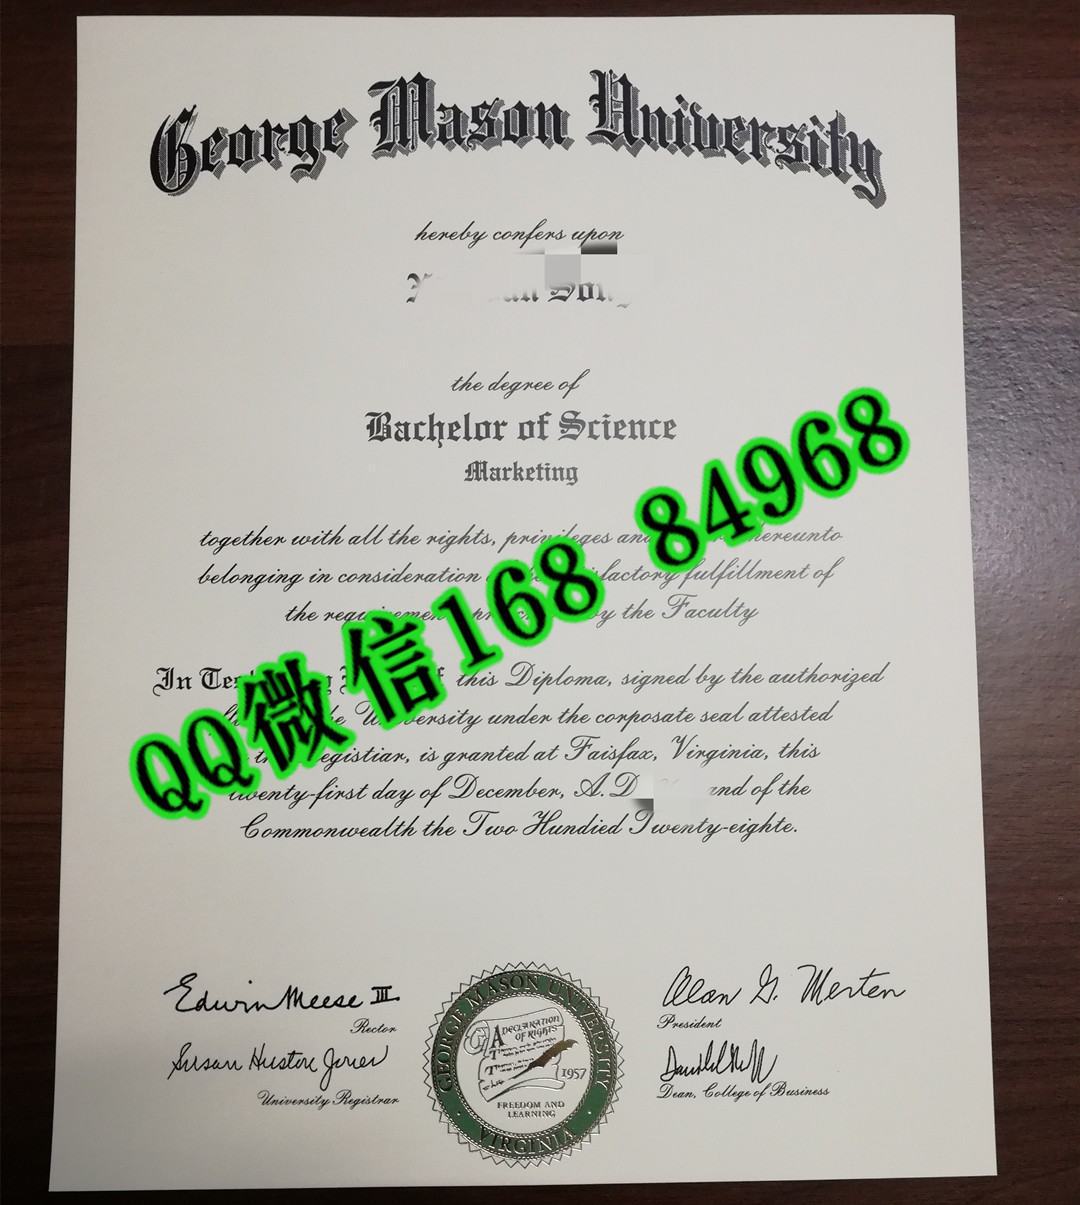 美国乔治梅森大学George Mason University毕业证，George Mason University diploma certificate